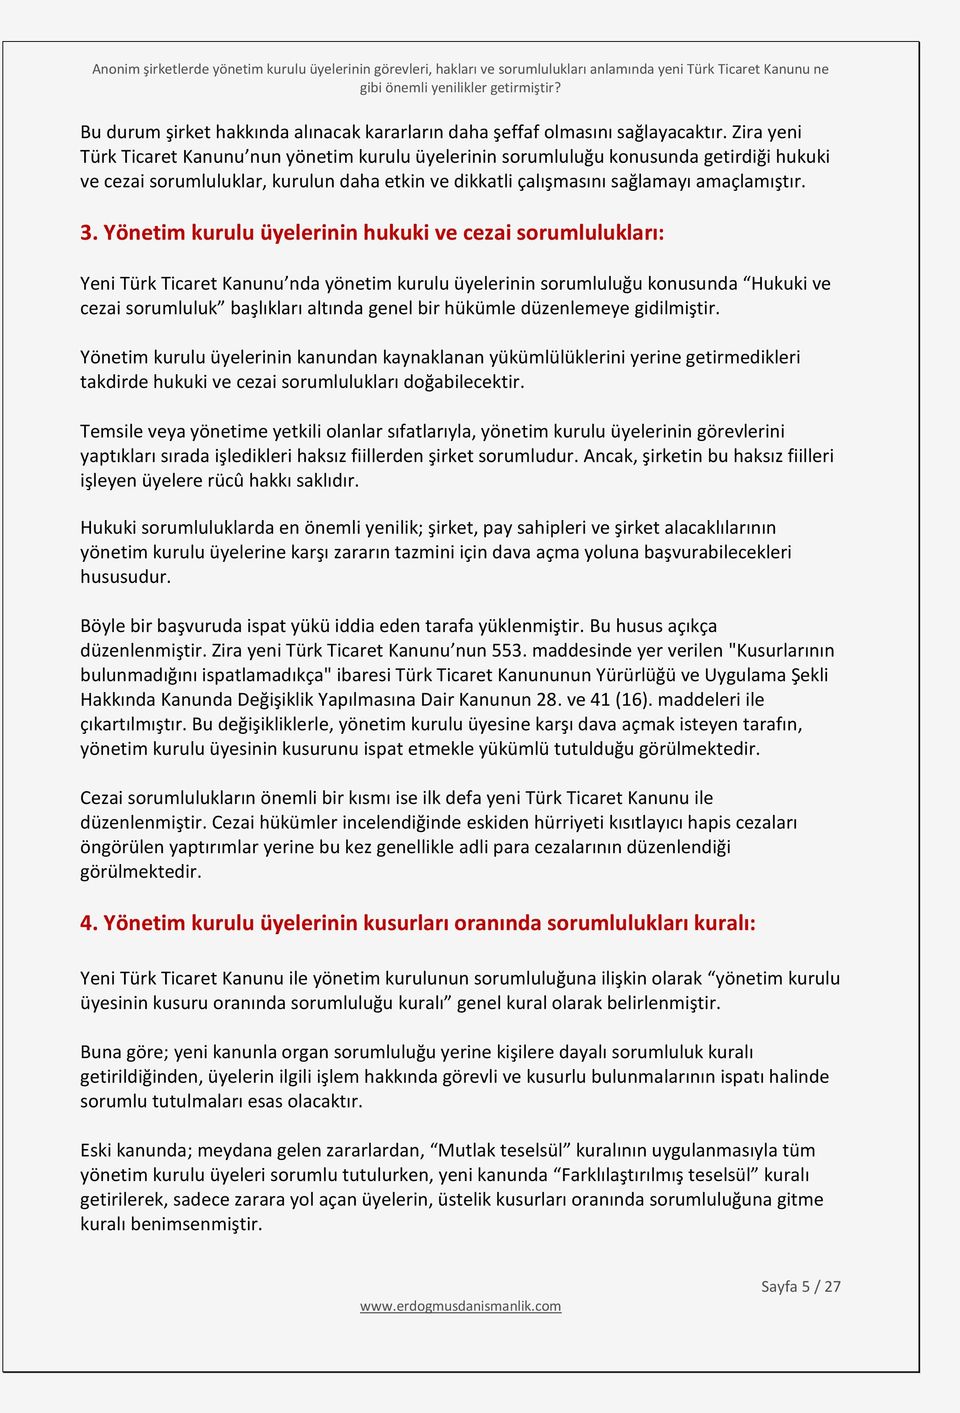 Yönetim kurulu üyelerinin hukuki ve cezai sorumlulukları: Yeni Türk Ticaret Kanunu nda yönetim kurulu üyelerinin sorumluluğu konusunda Hukuki ve cezai sorumluluk başlıkları altında genel bir hükümle